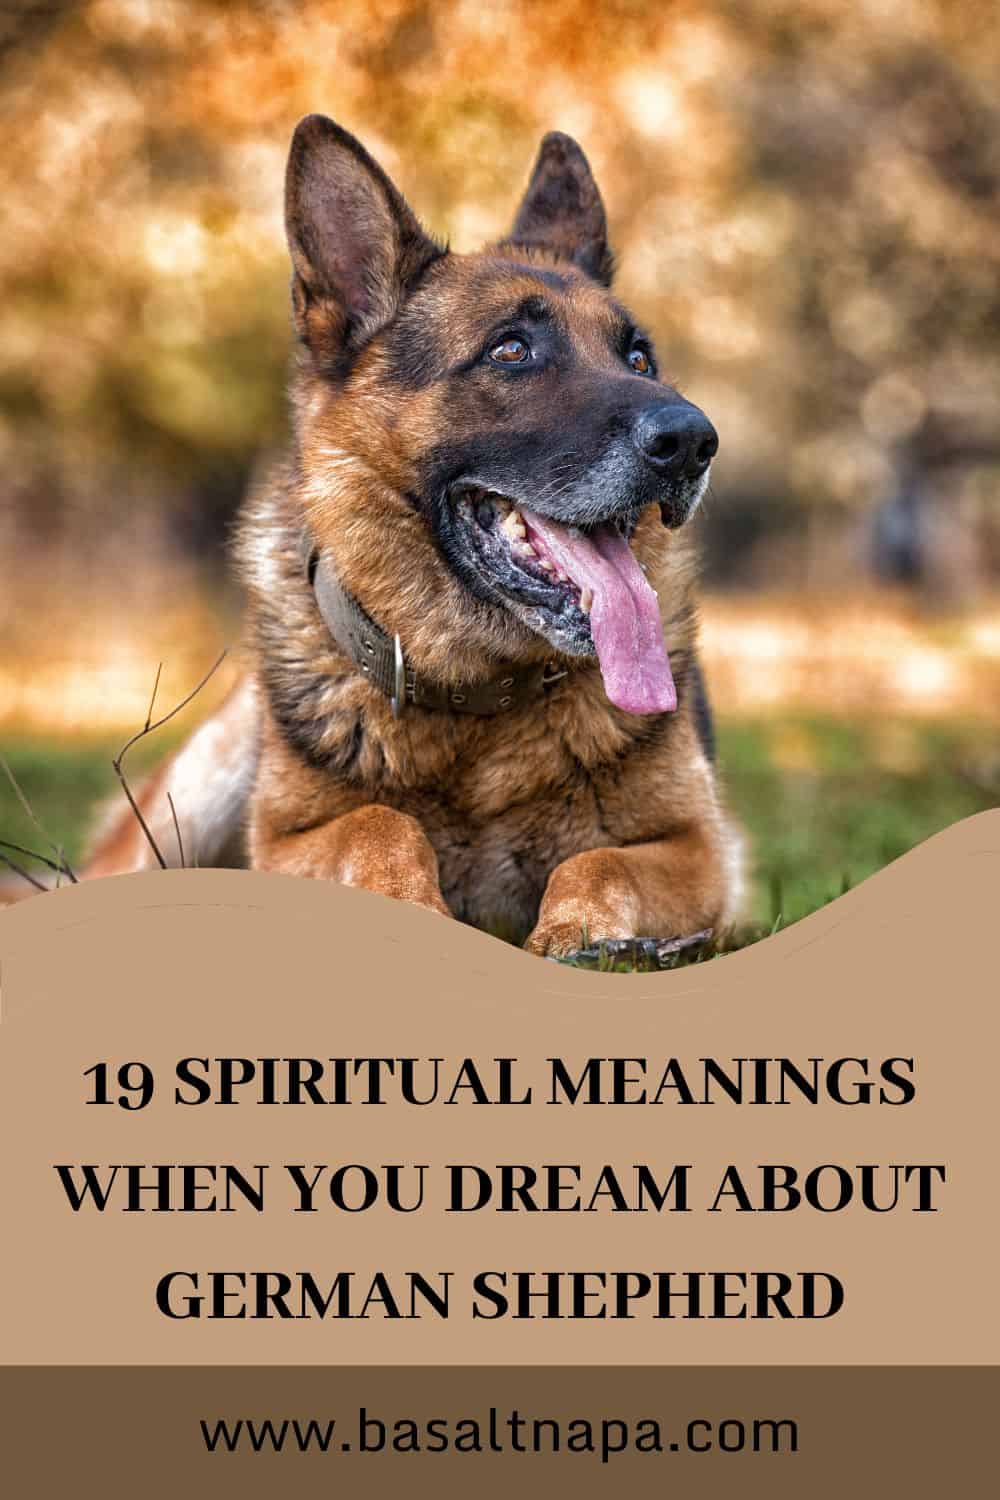 Spiritual Meaning Of German Shepherd Dreams